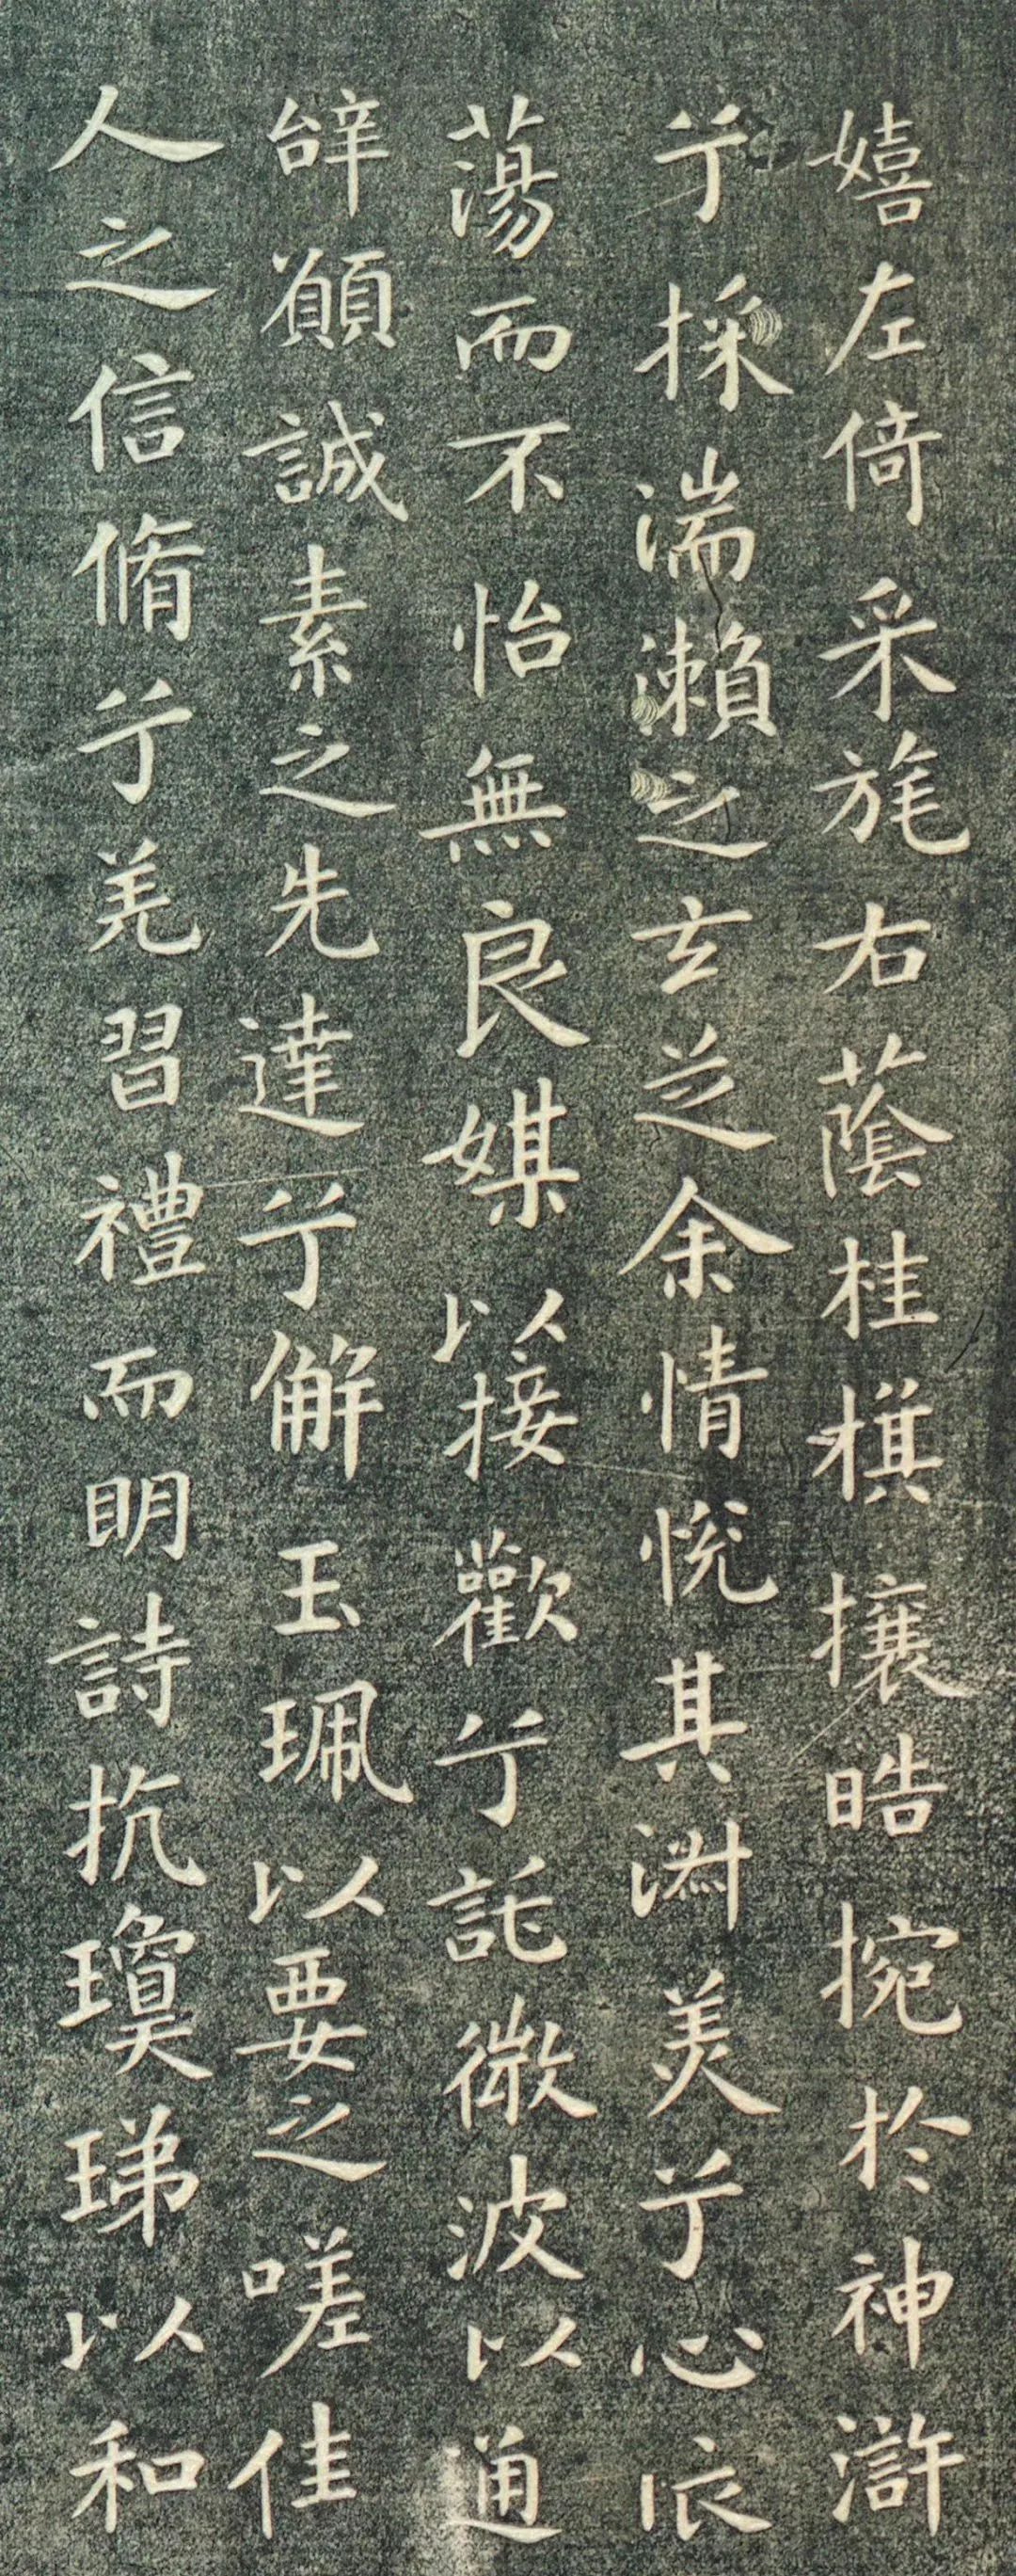 柳公权的柳体是流传下来书法字体之一,虽然现代推崇柳体学习的人并不